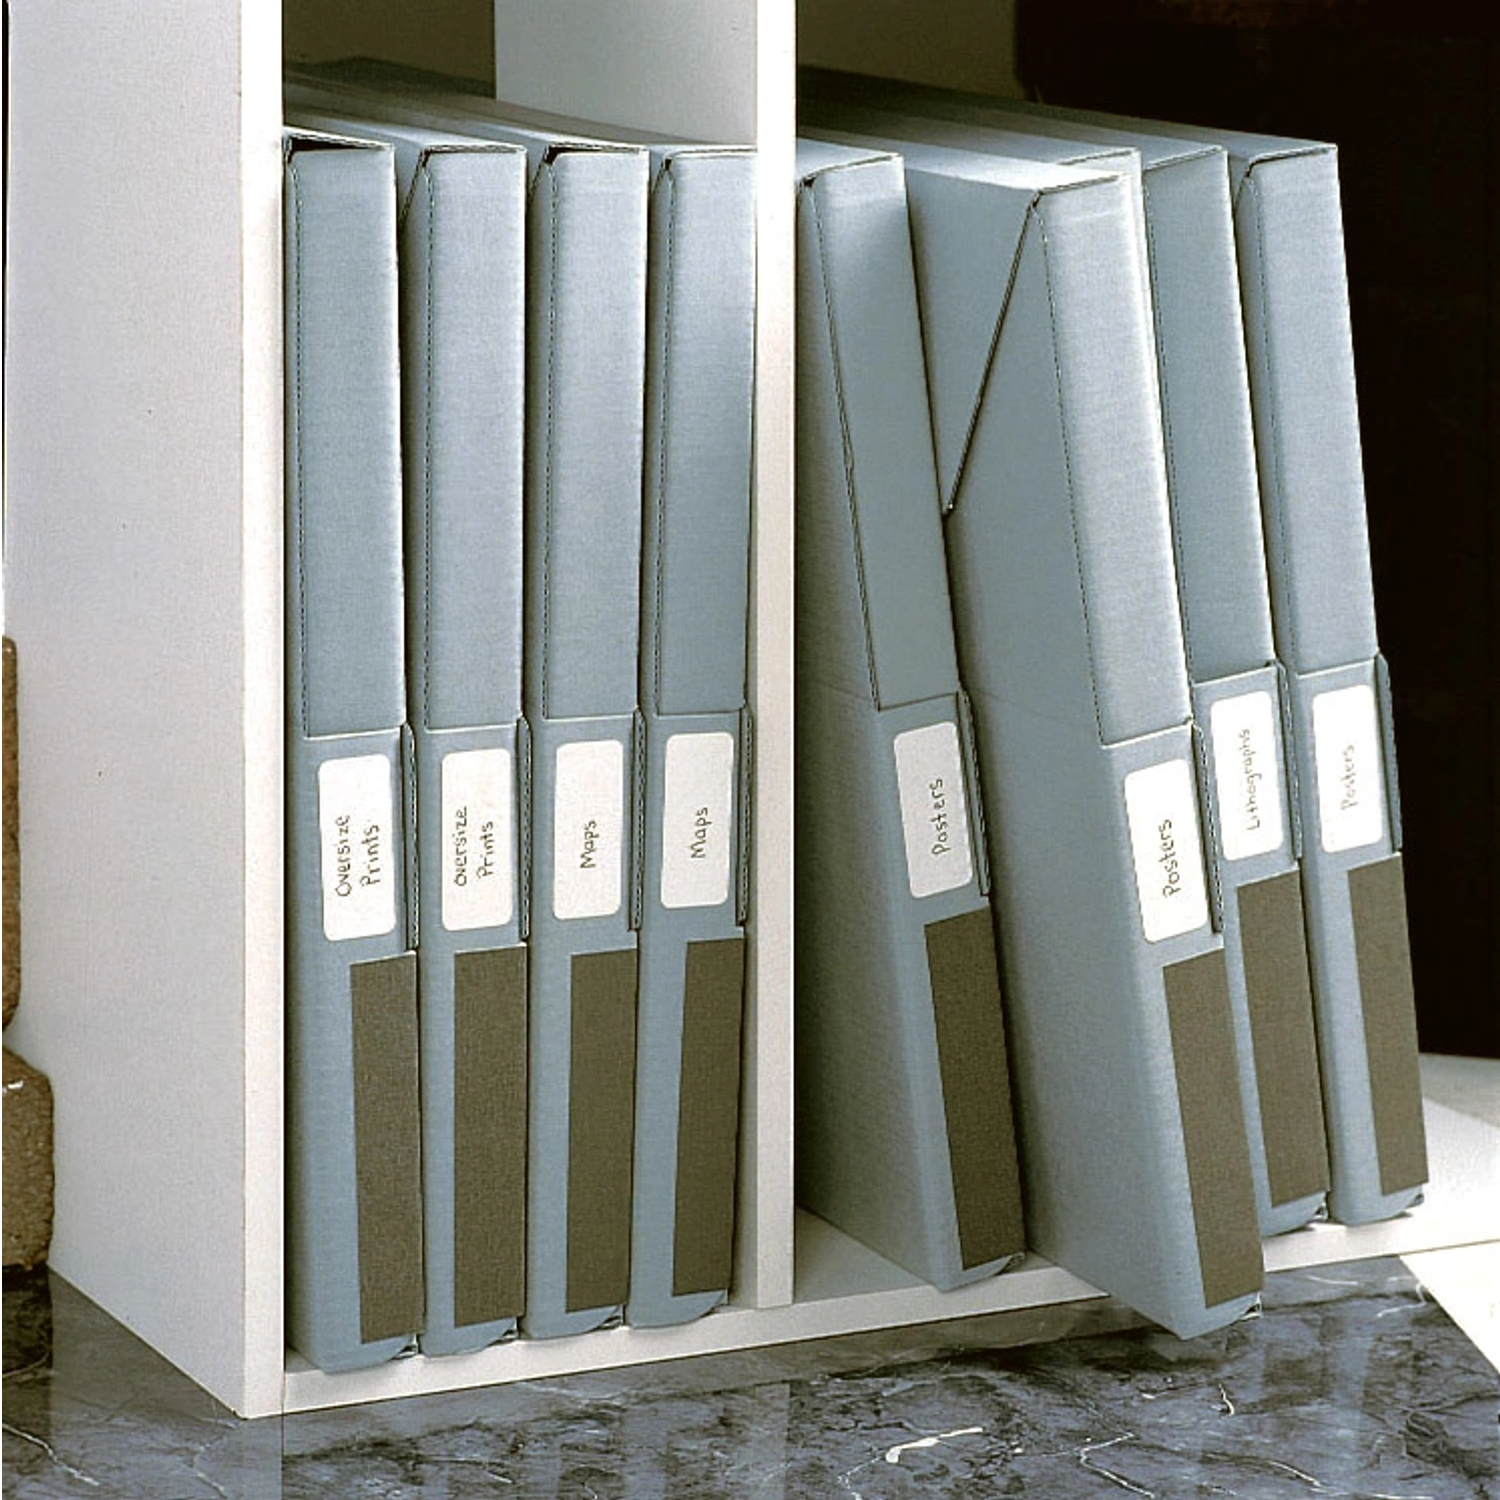 Print File Archival Photo Box (Green)